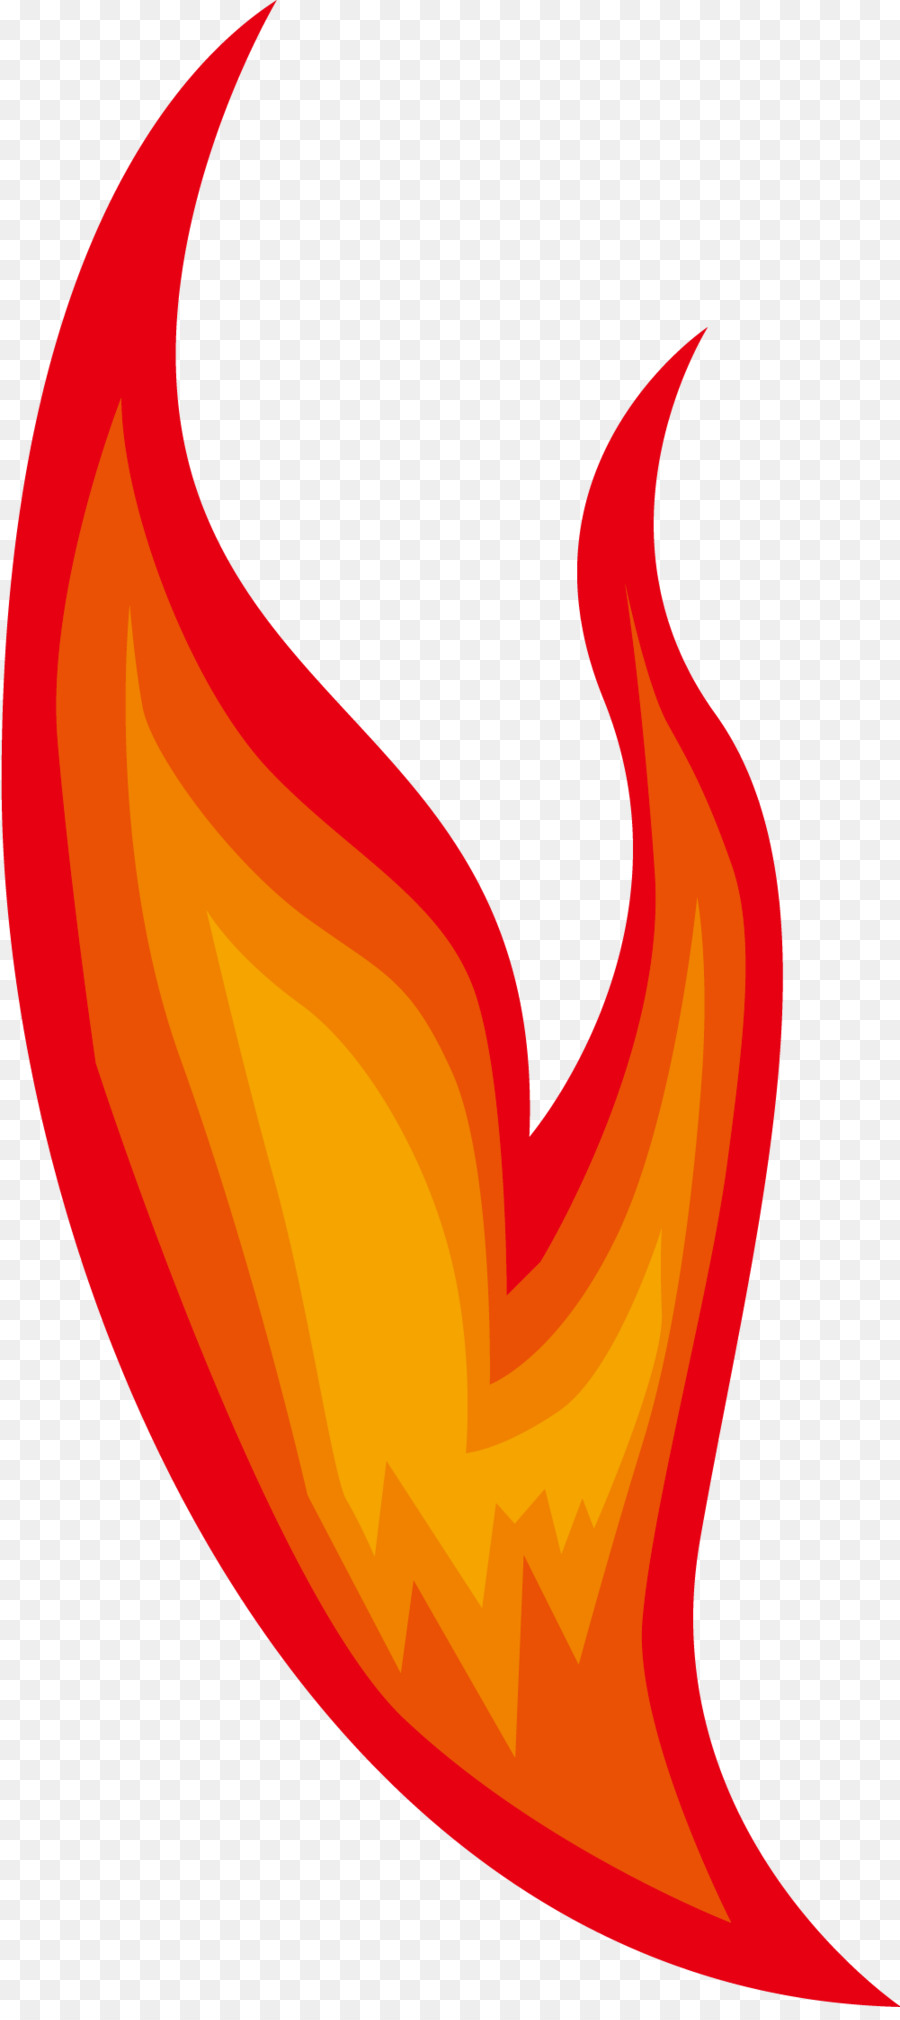 Ngọn Lửa đỏ Clip nghệ thuật - Tay sơn đỏ ngọn lửa